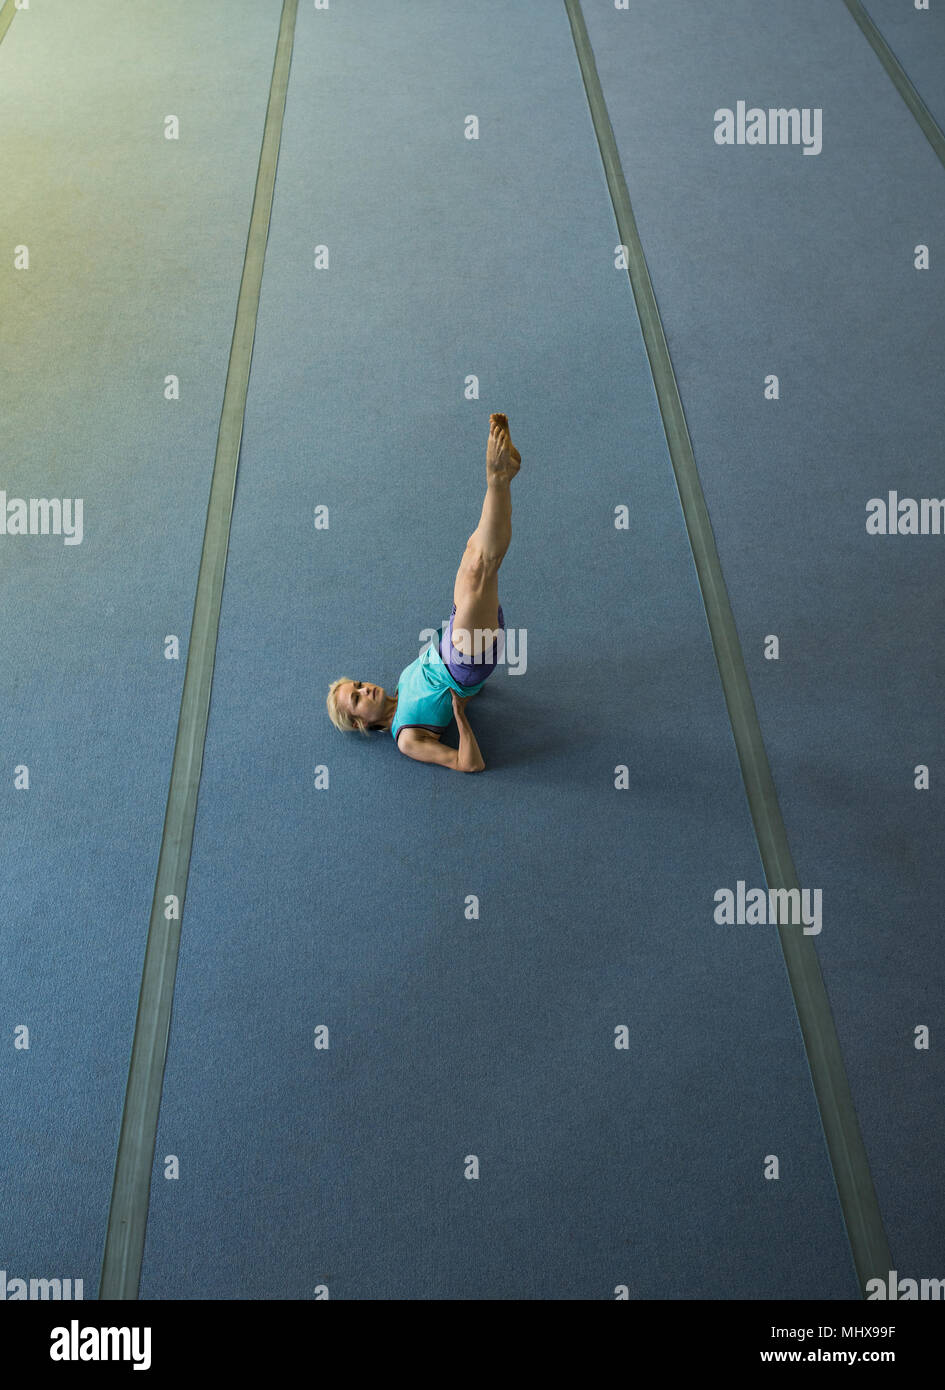 Sportlerin stretching Übung durchführen Stockfoto